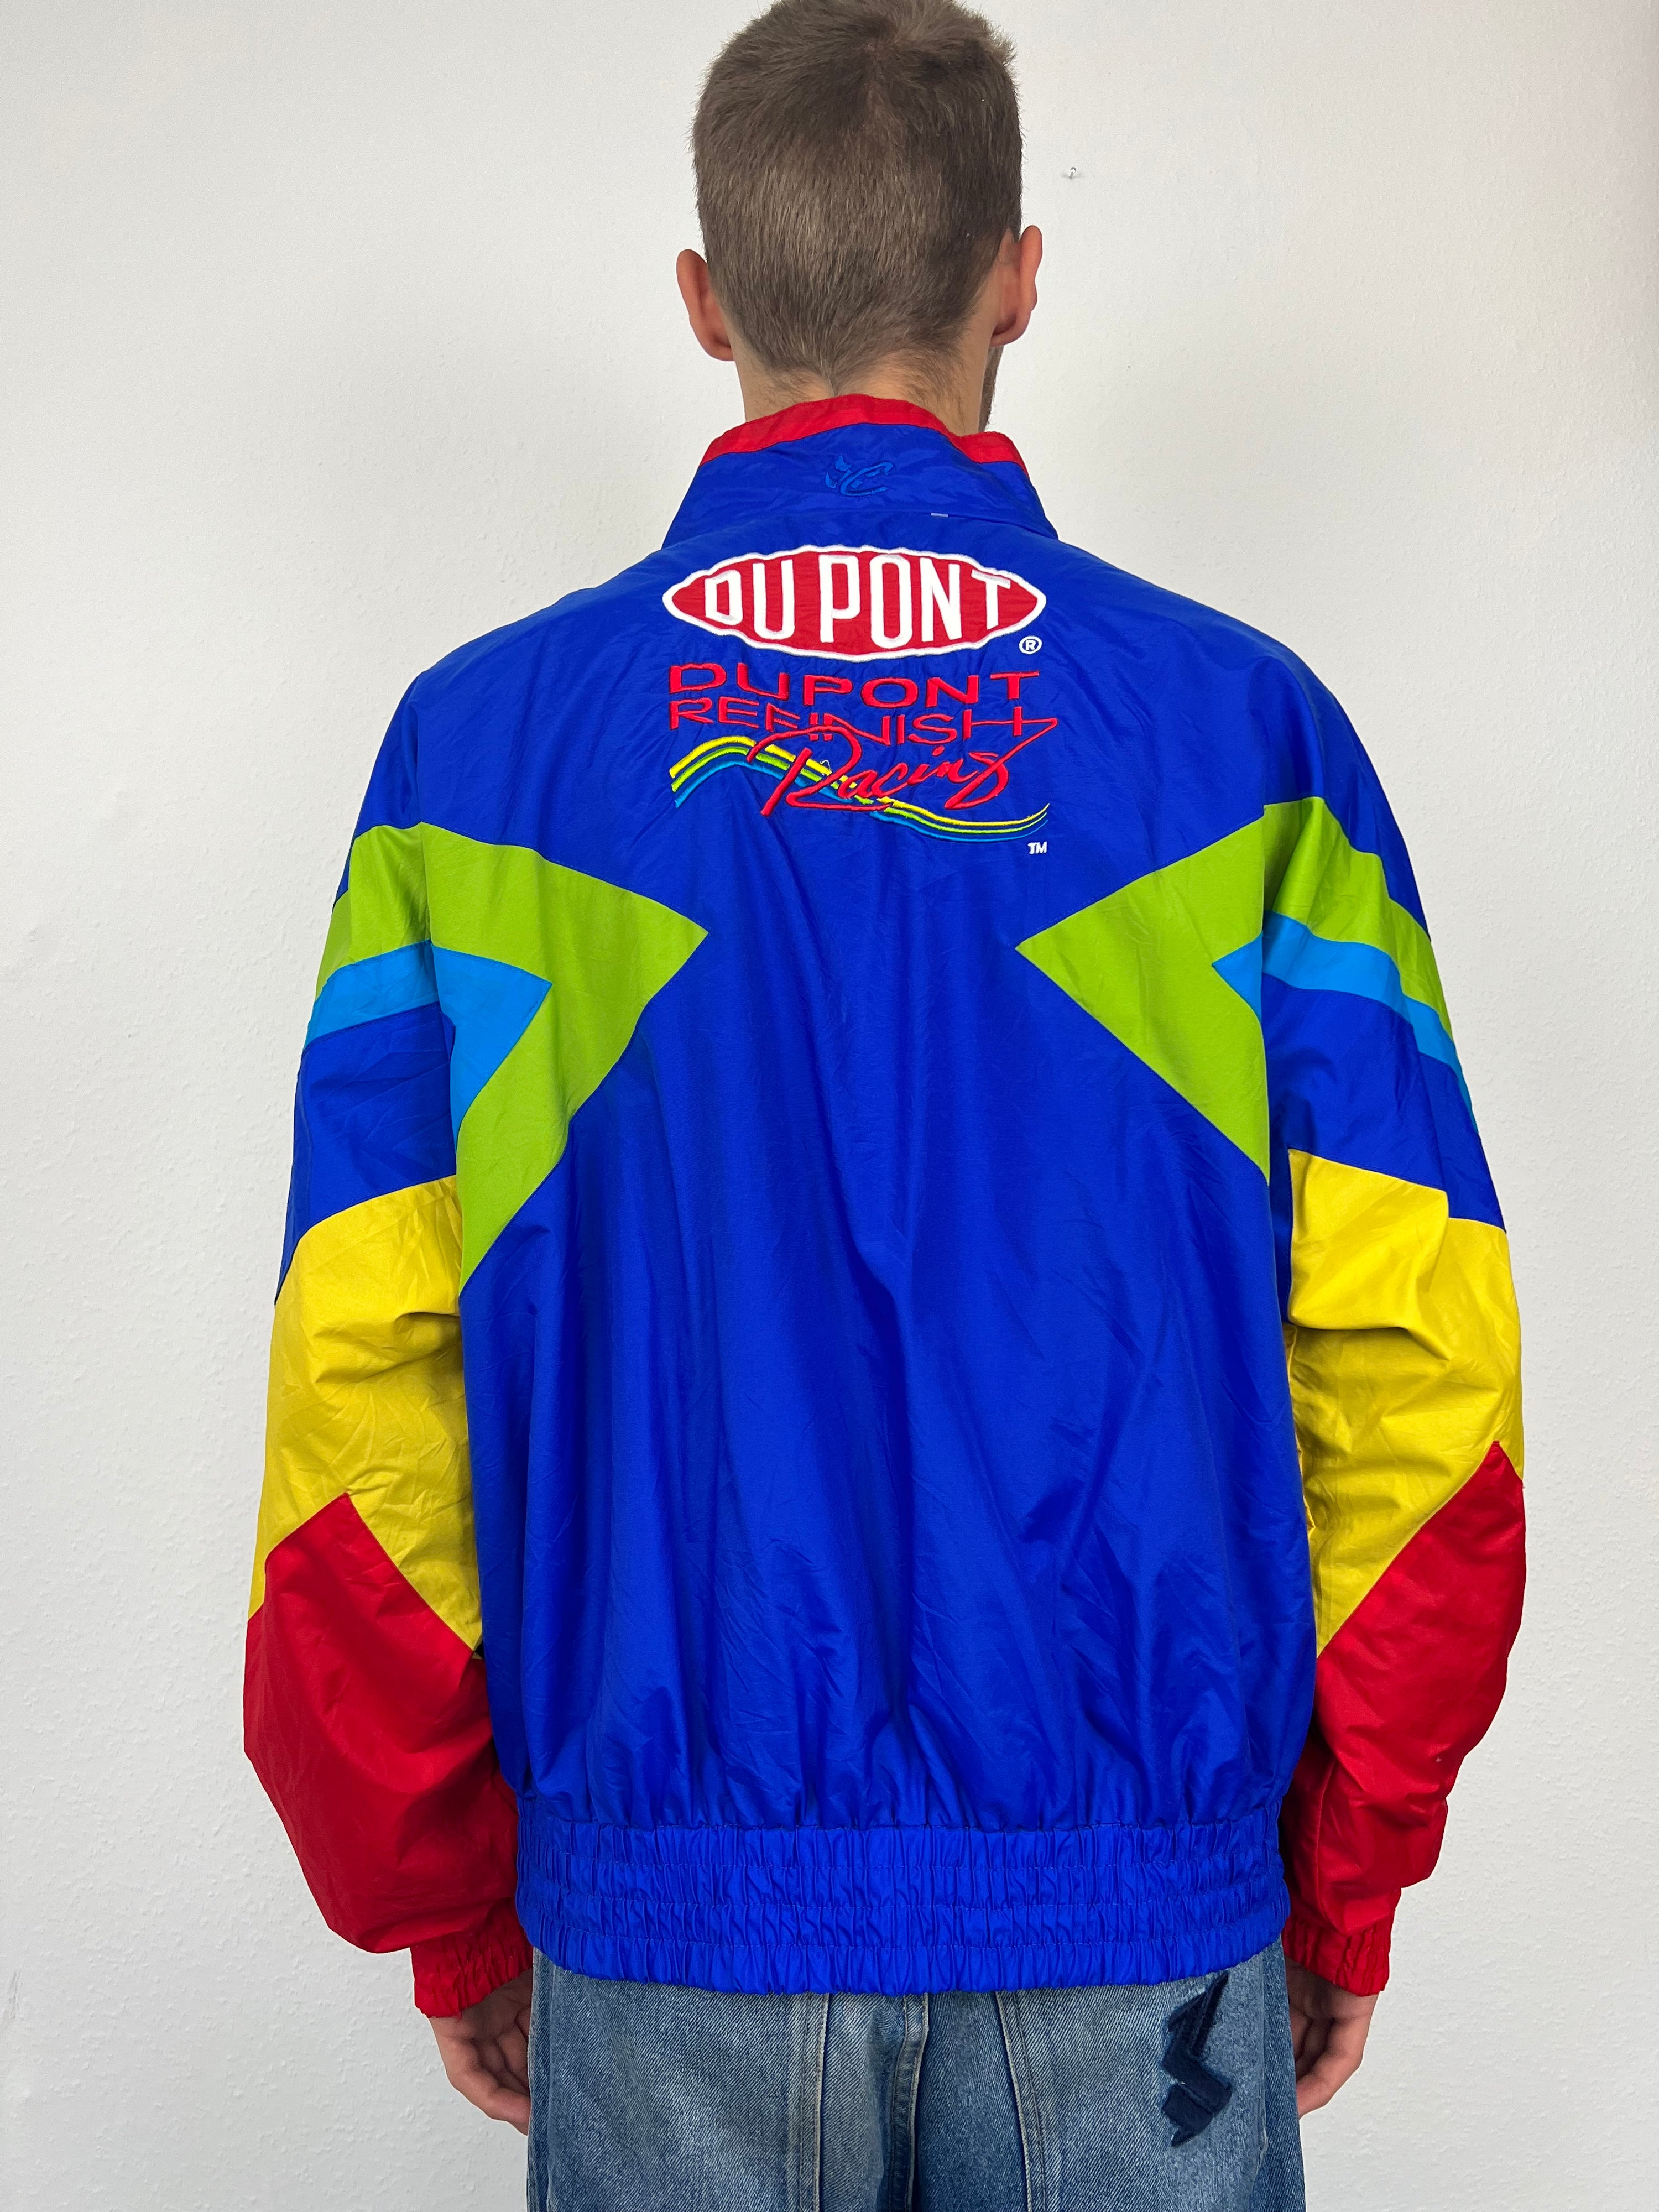 Vintage Jeff Gordon Dupont Racing Jacket (XL)